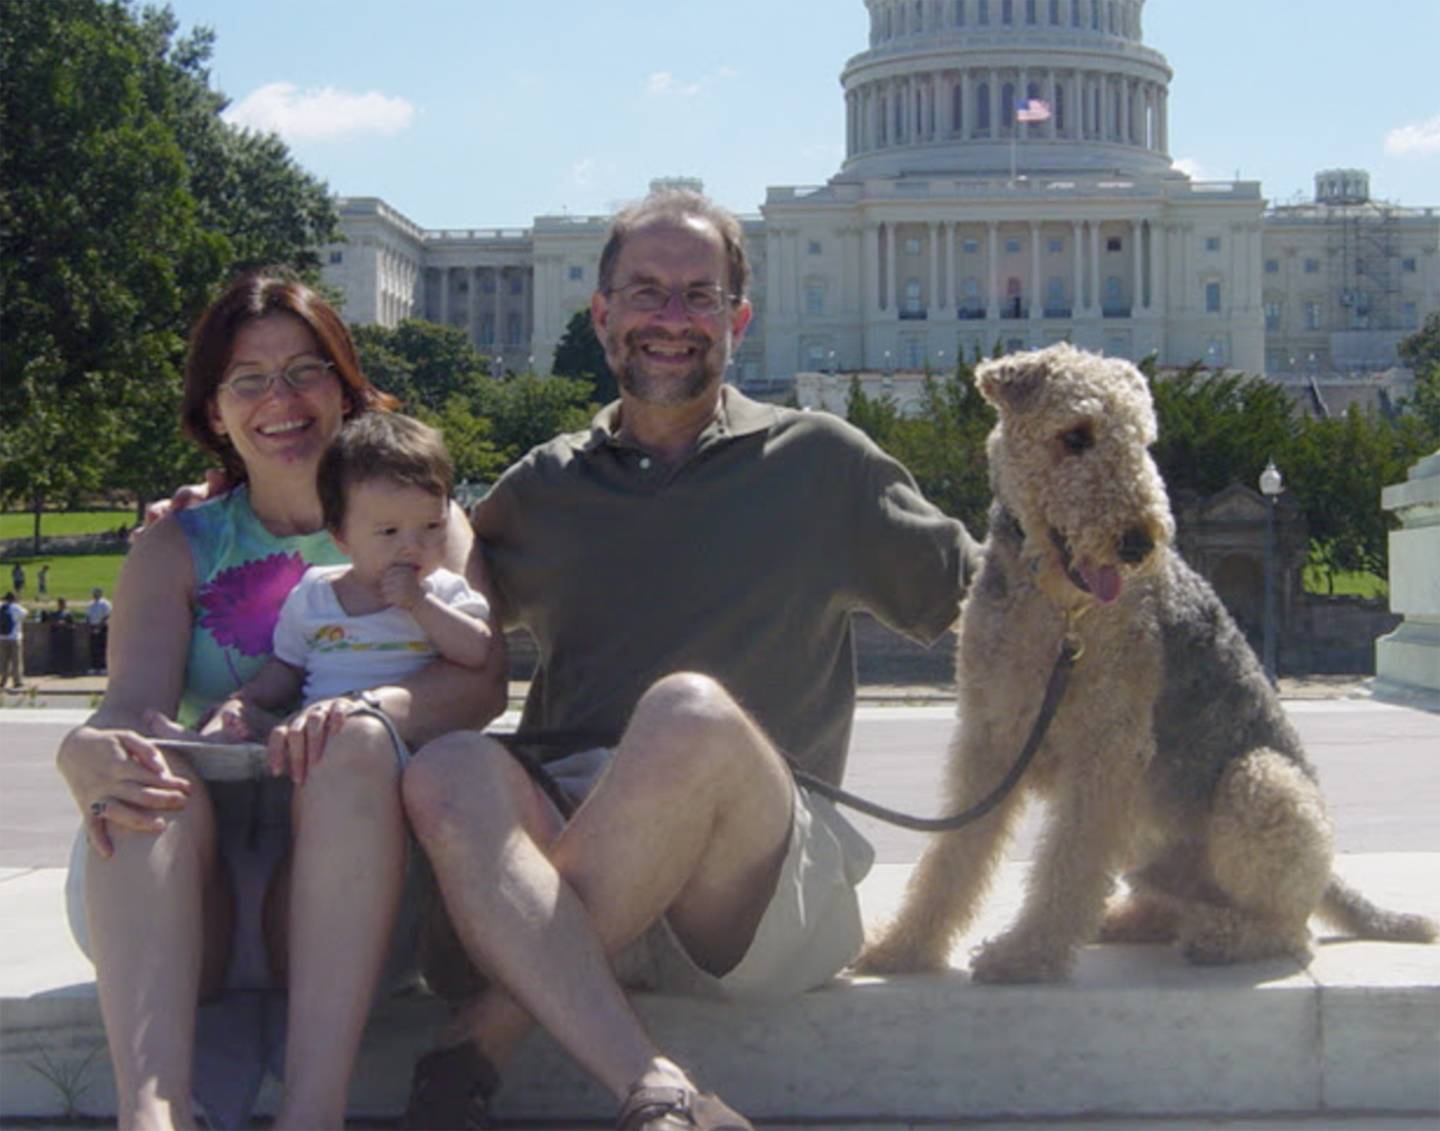 Baby Ella Gantman with her parents in Washington, D.C.